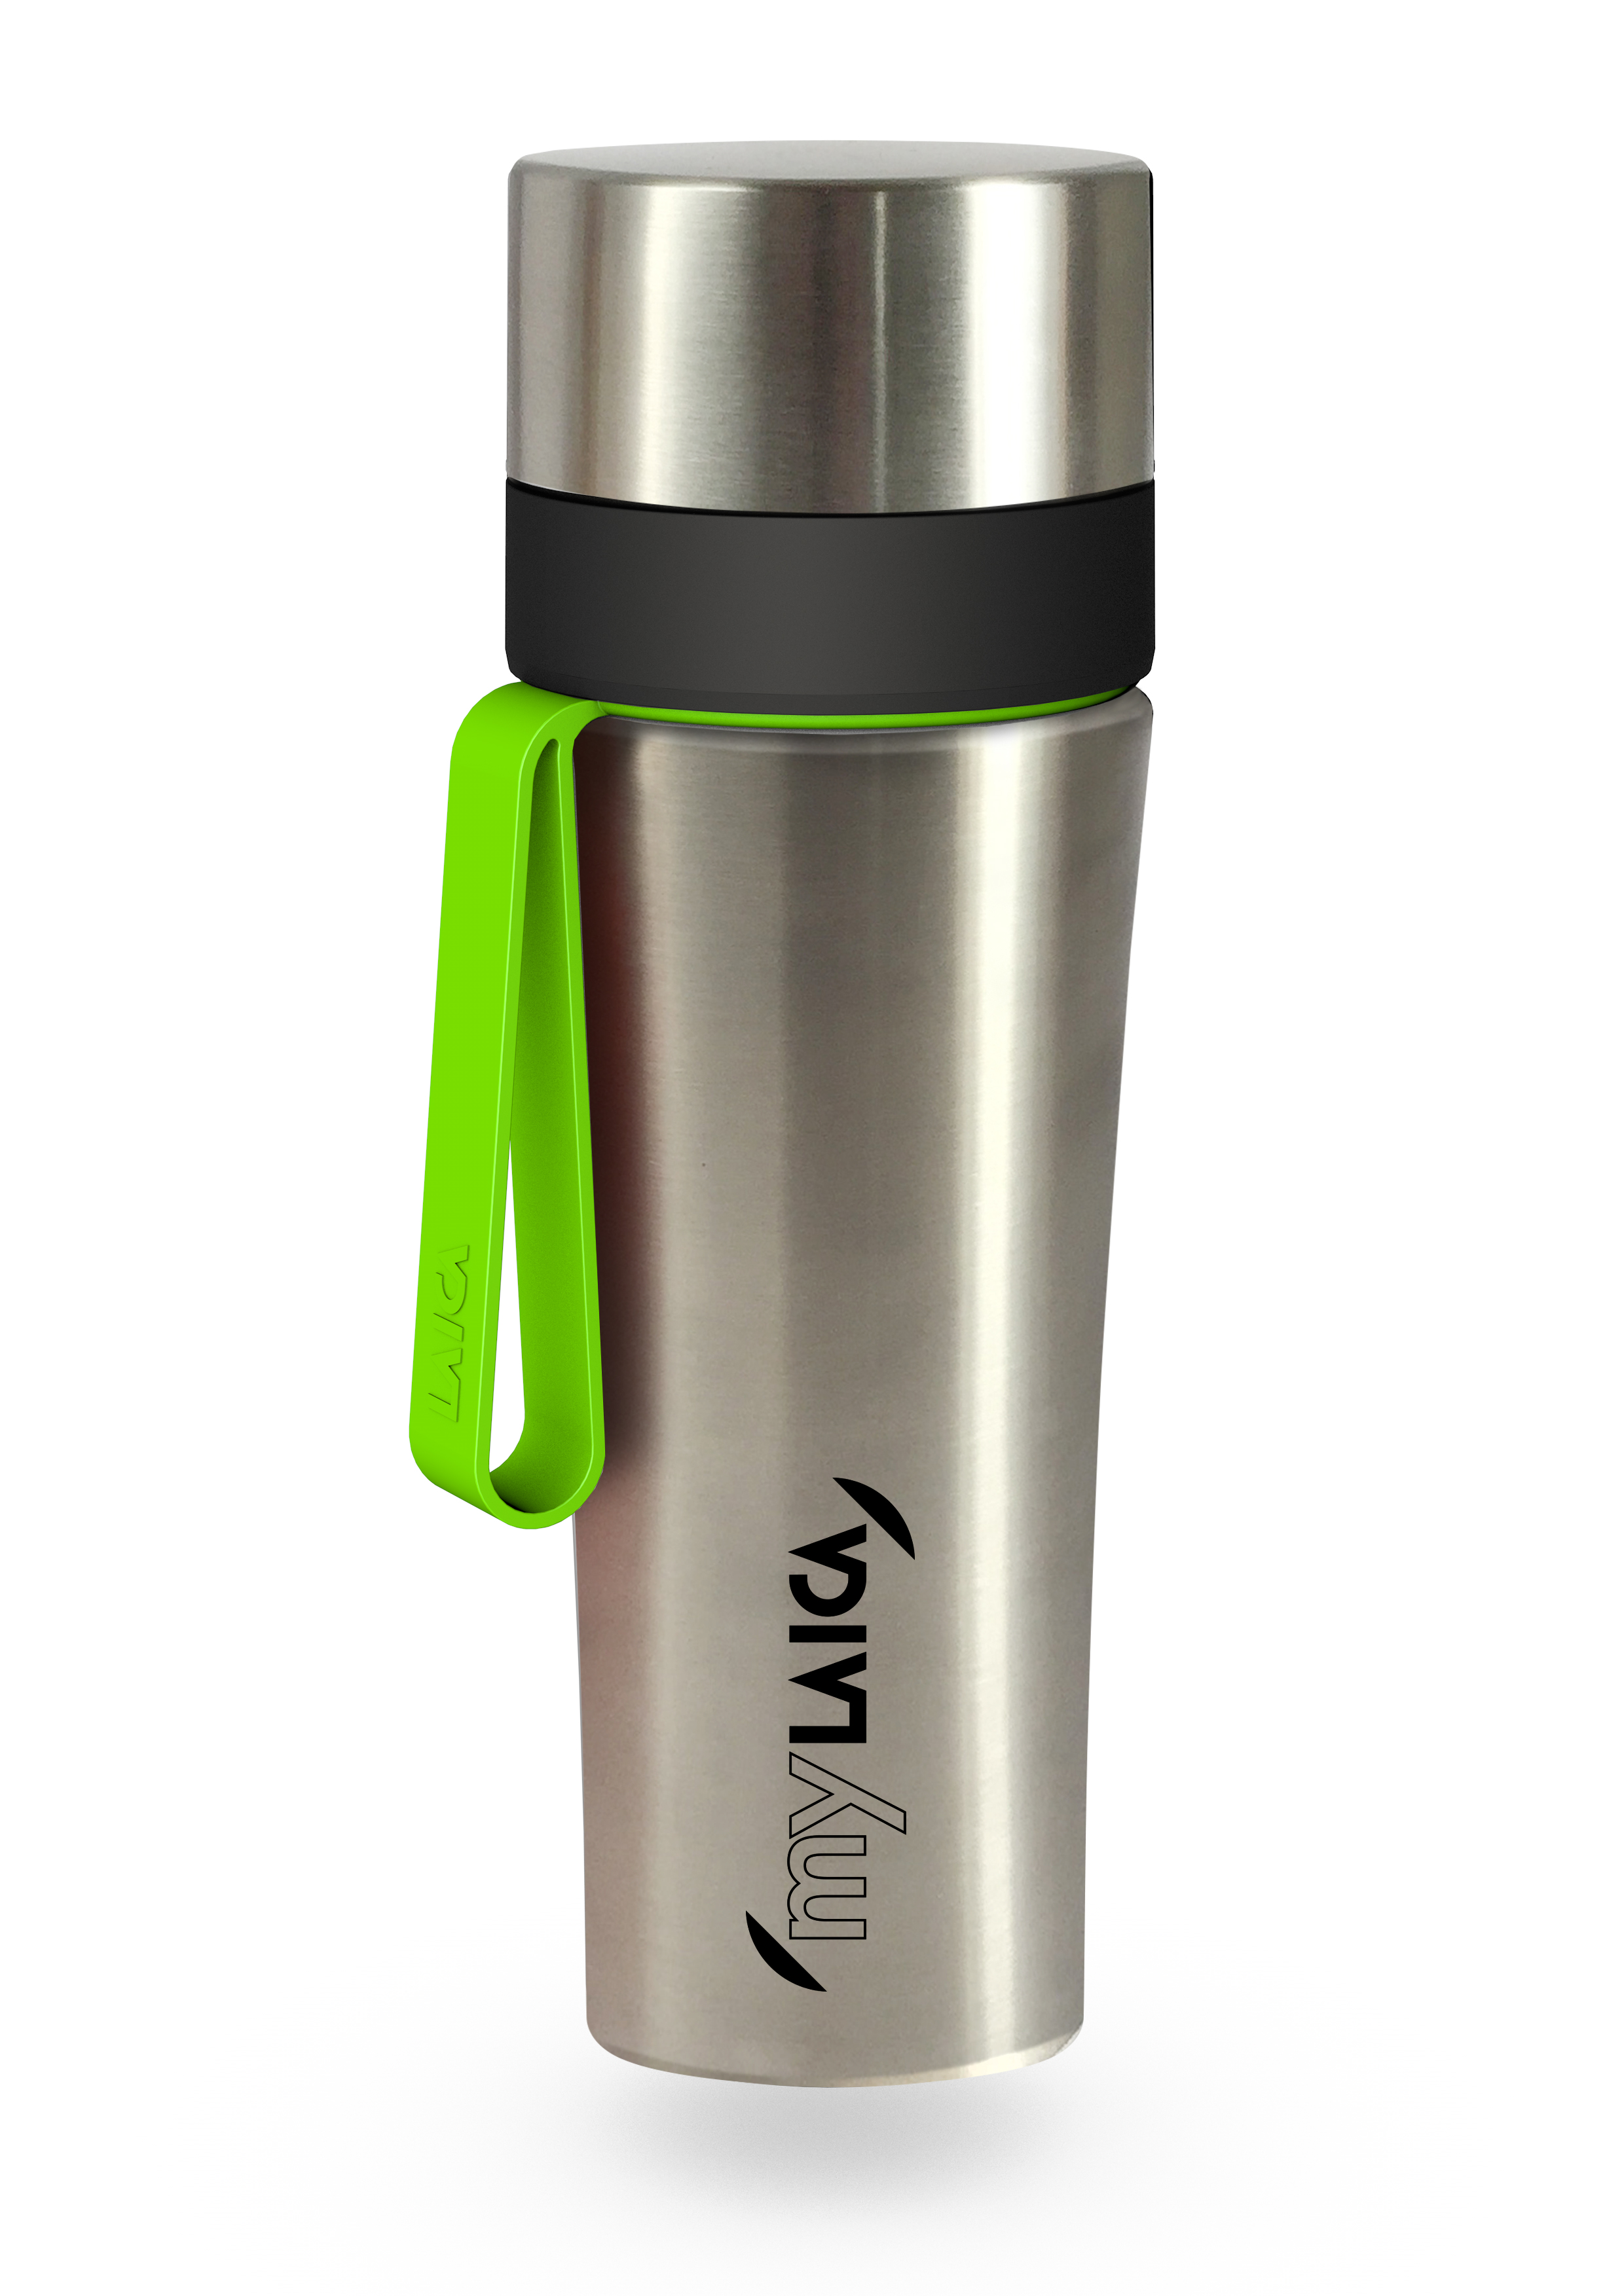 NOU: Sticlă filtrantă Sport myLaica, Inox, 0,55 litri, portabilă laicashop.ro 2021